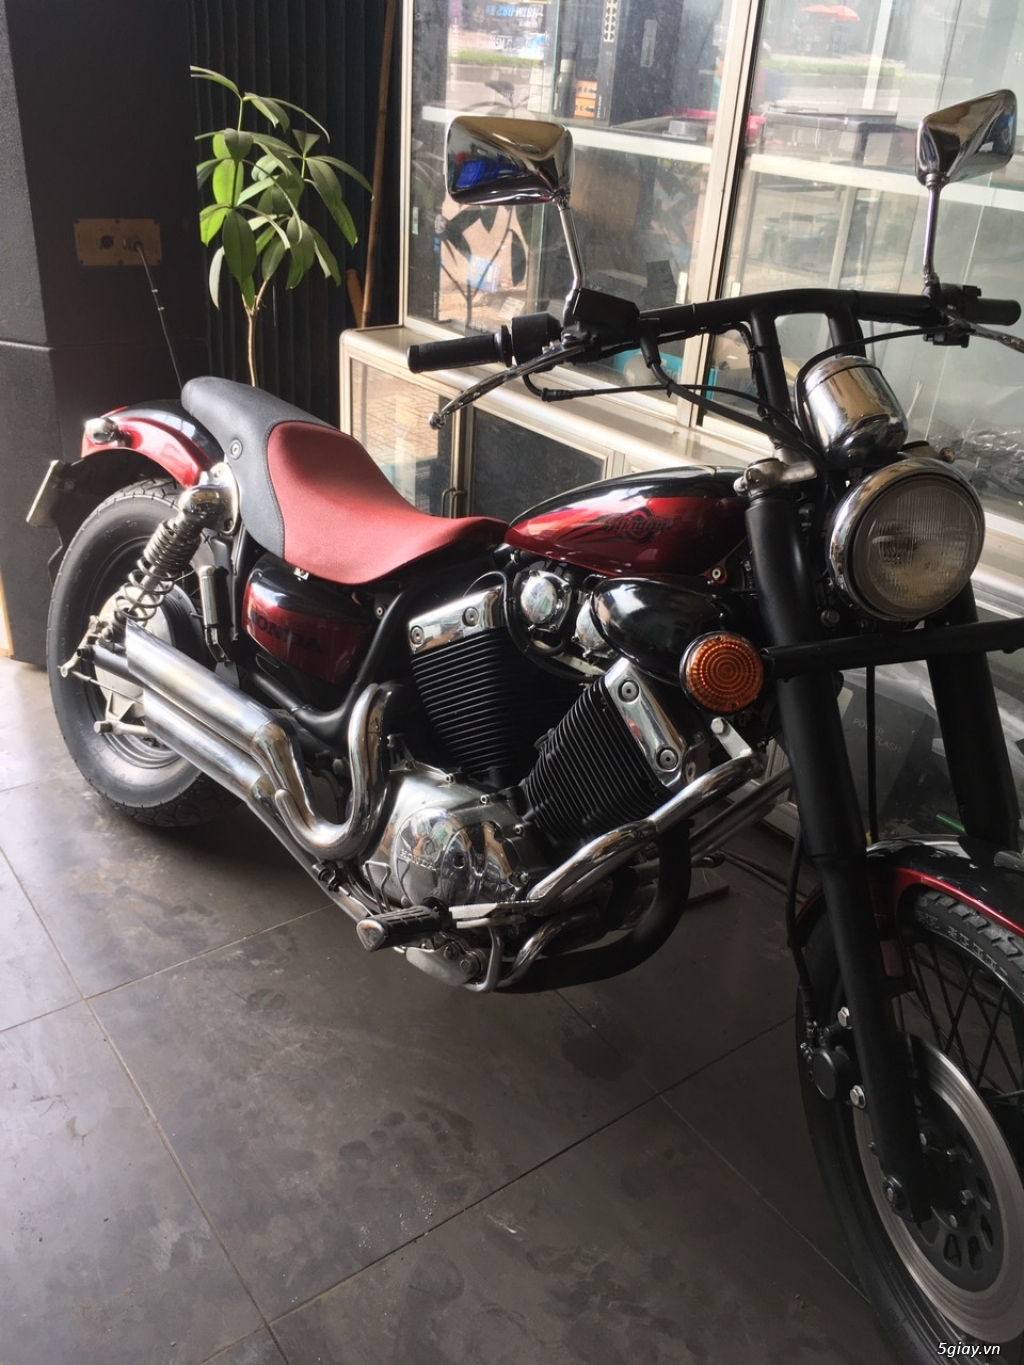 Bán moto PKL honda shadow classic 400cc cruiser    Giá 60 triệu   0908565905  Xe Hơi Việt  Chợ Mua Bán Xe Ô Tô Xe Máy Xe Tải Xe Khách  Online